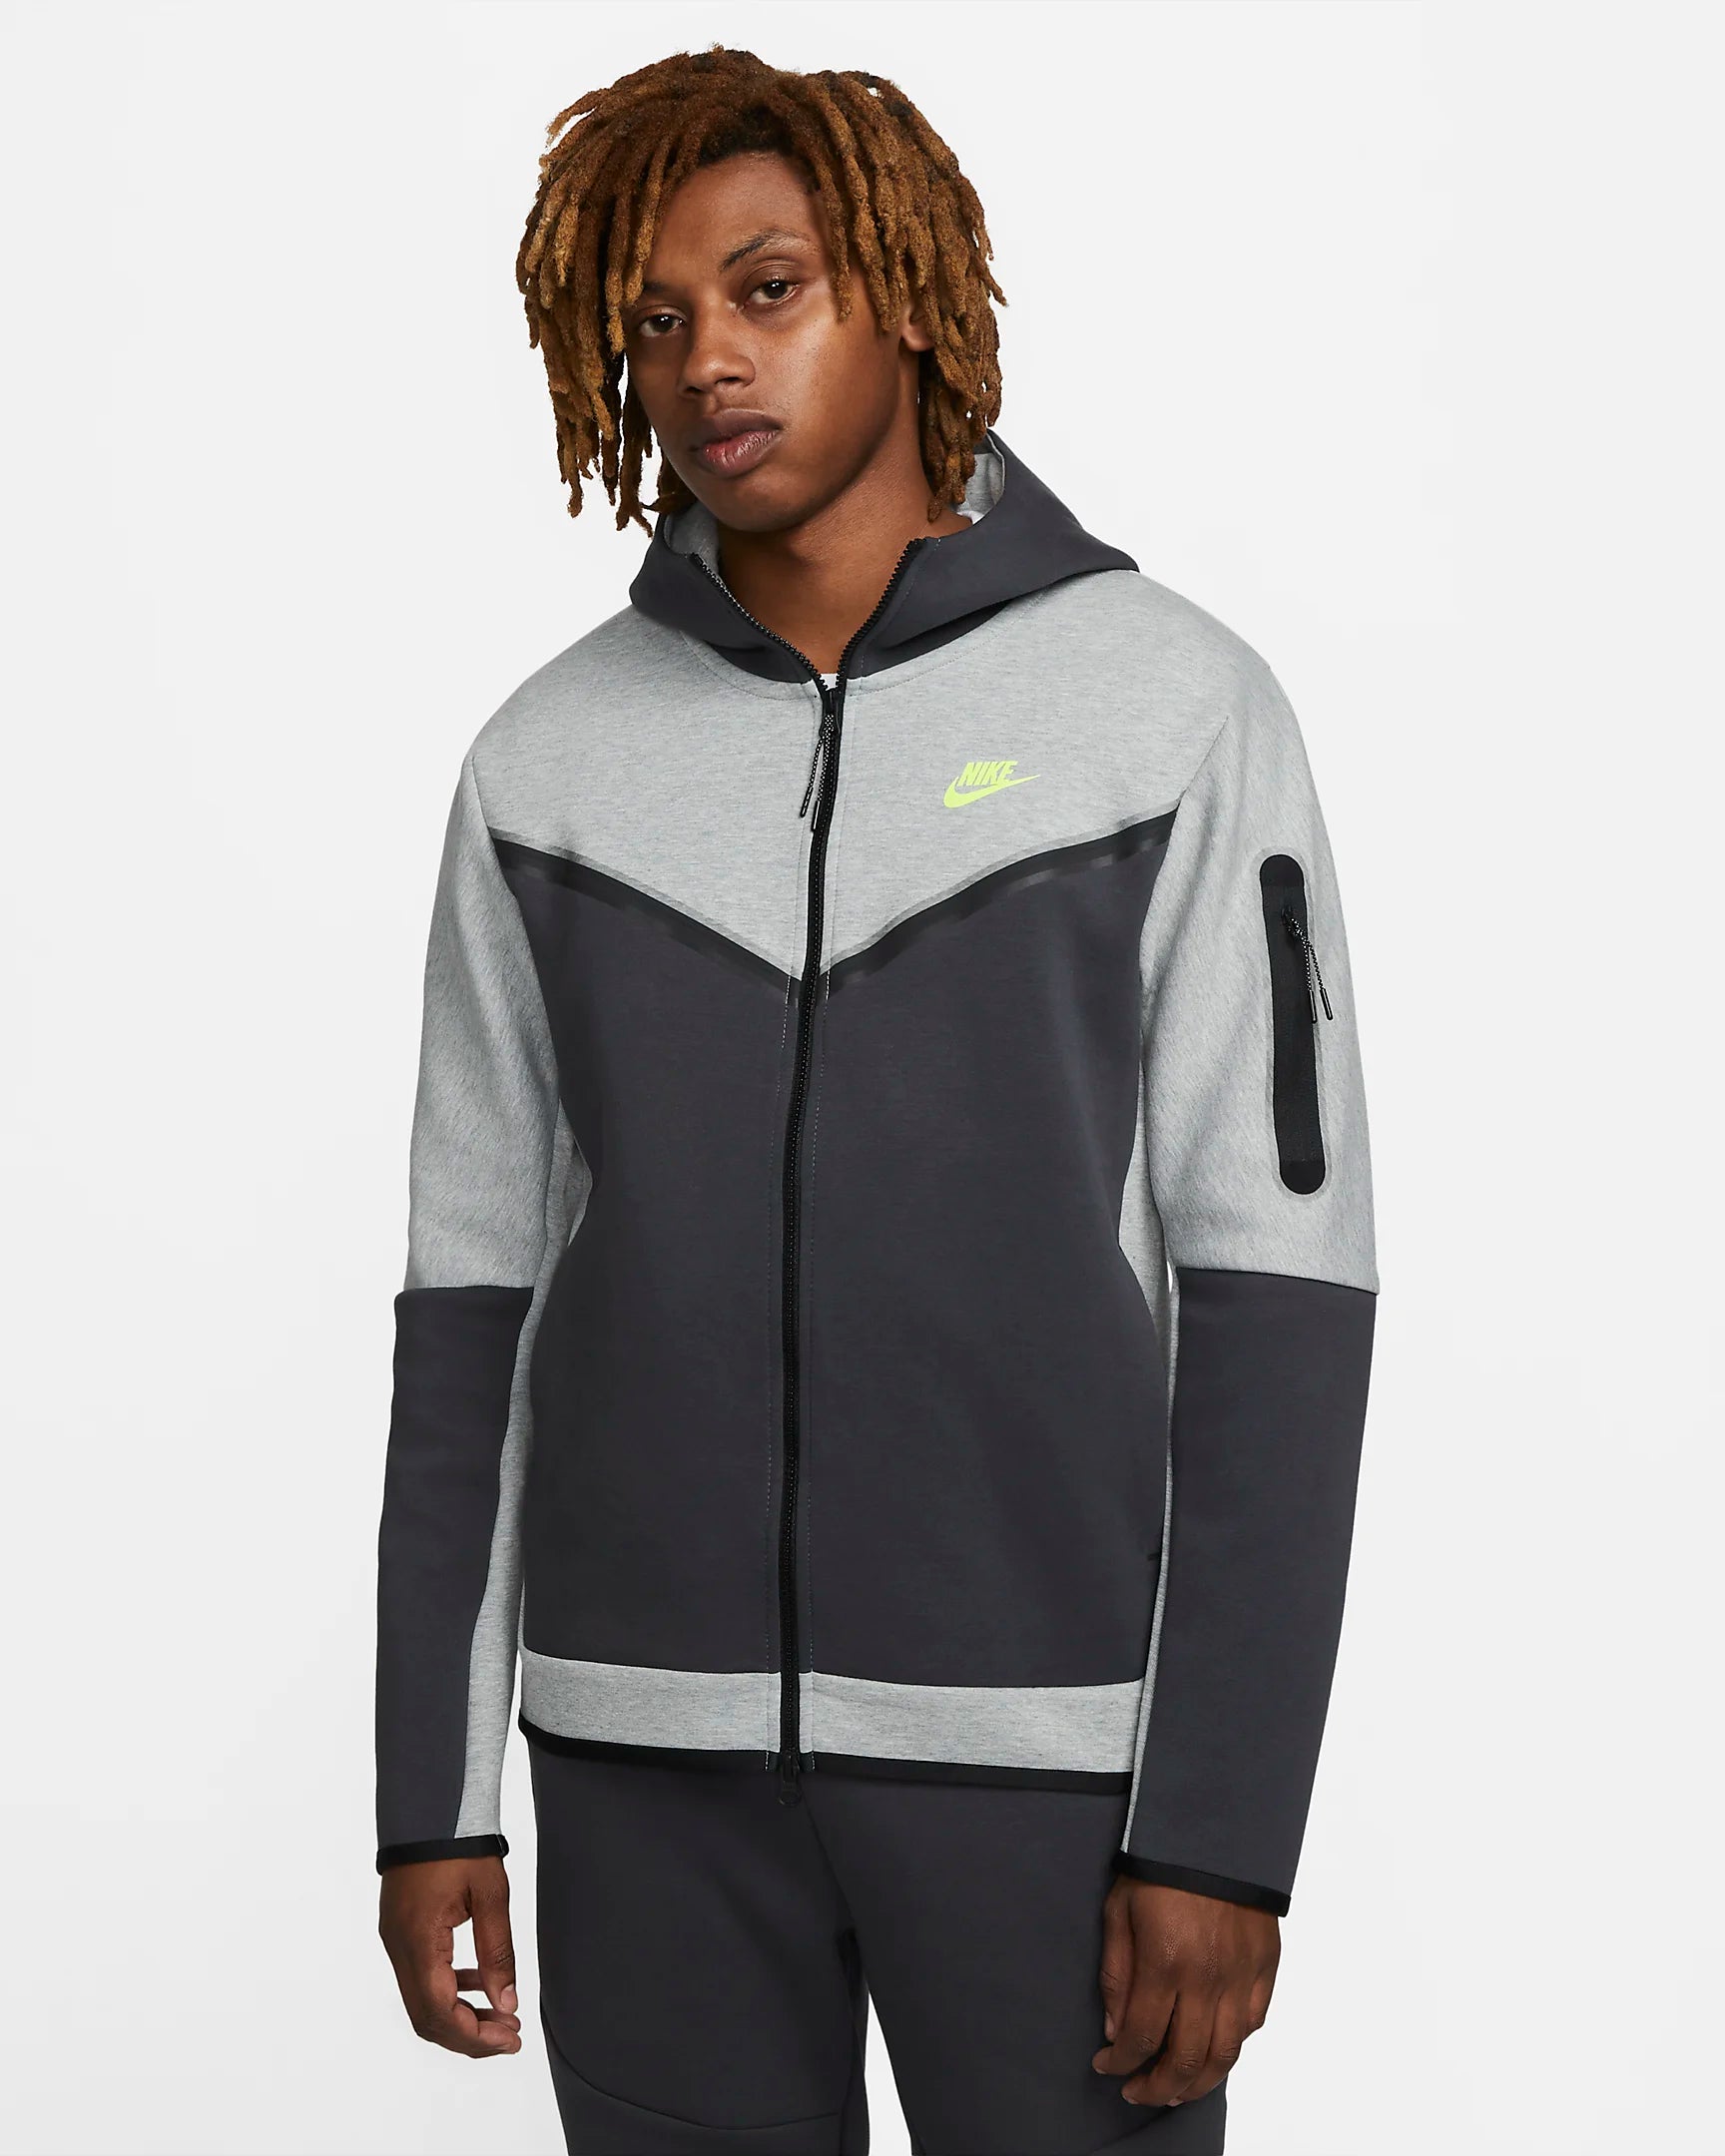 Nike Tech Fleece Kapuzenjacke – Grau/Grün